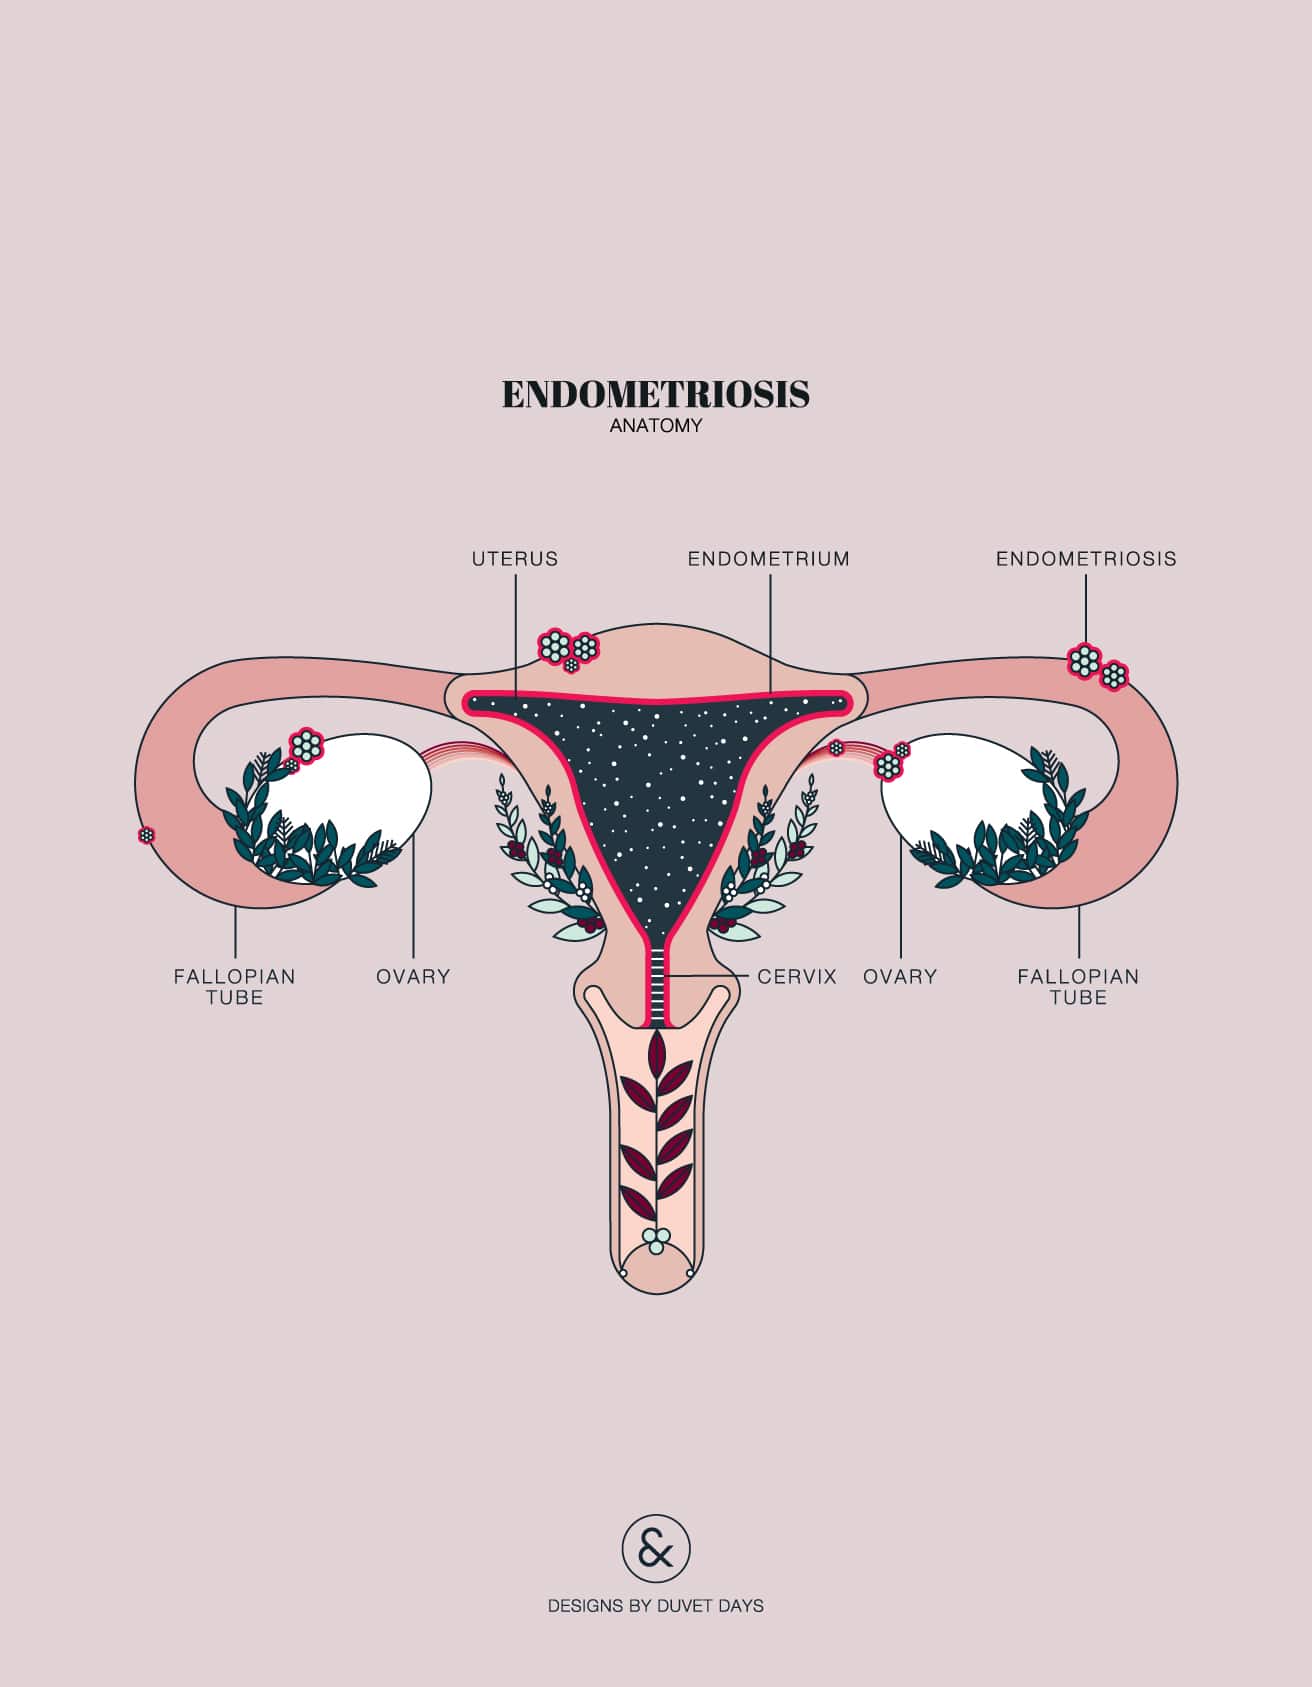 Armed F. reccomend Endometriosis in the clitoris